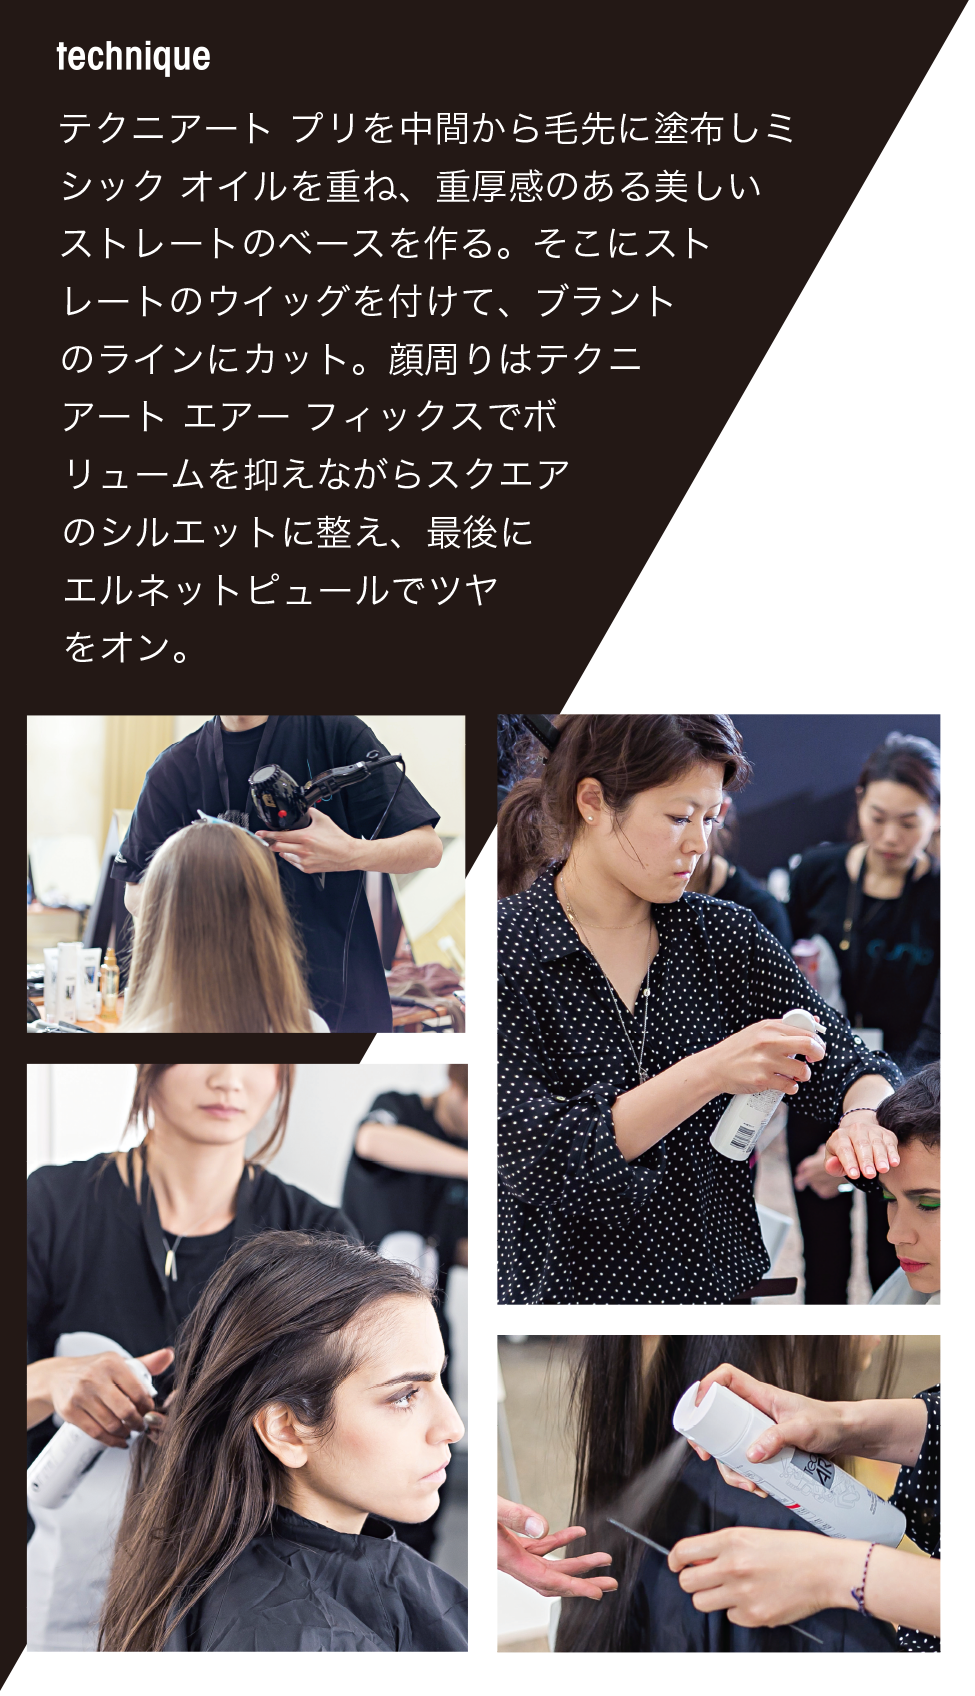 毎シーズンお伝えしているファッション・ウィーク東京に加え、今回はミラノ会場に2メゾンが参加。日本を代表するトップヘアアーティストの活躍と、チームを組んだ協力サロンのスタイリストたちの奮闘をレポートします。